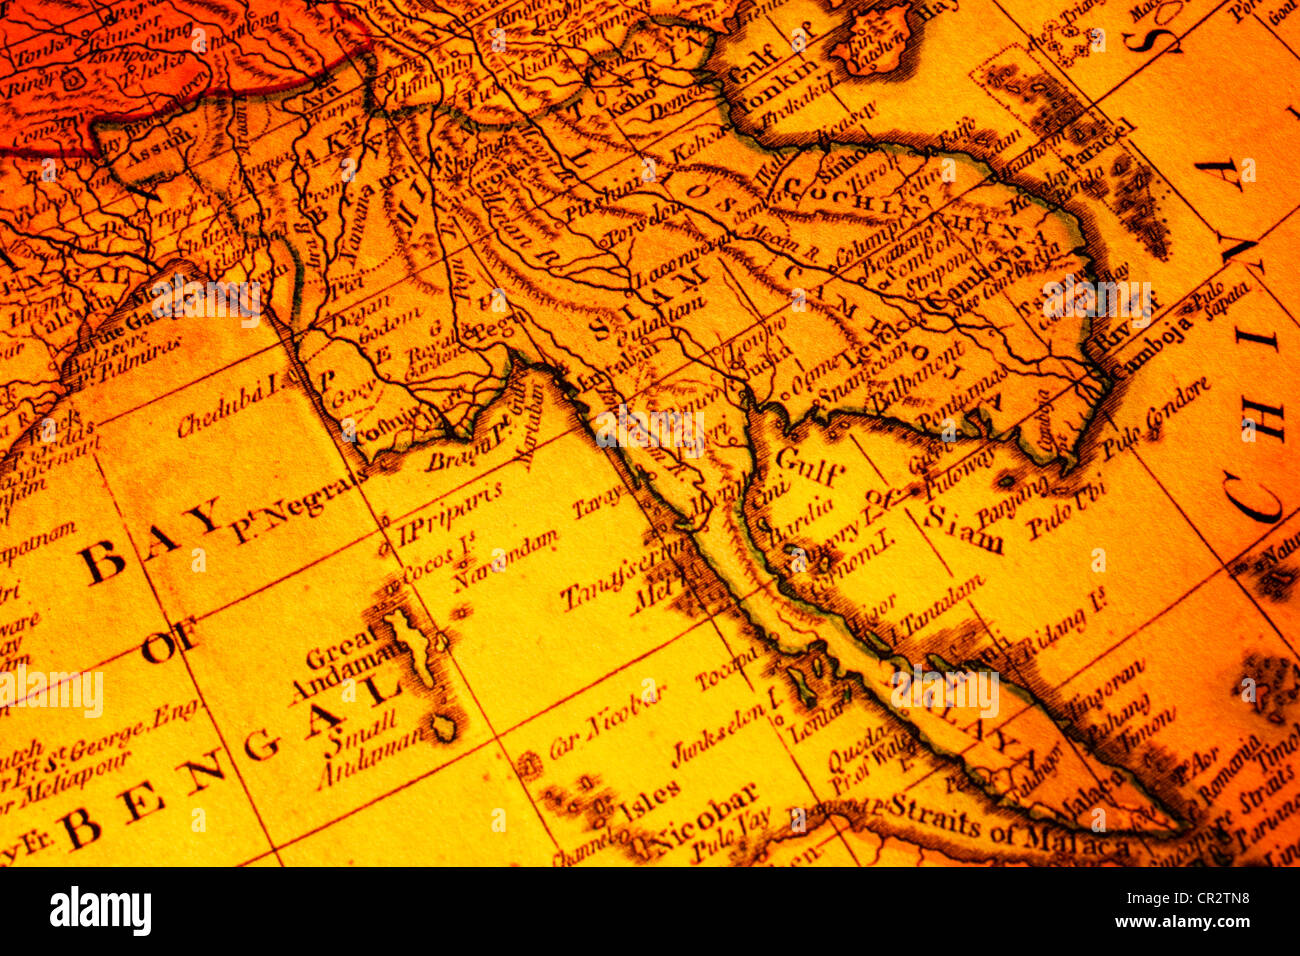 Mappa vecchia del Sud Est Asiatico incentrata sulla parola Siam. Include la Malaysia, Birmania, Tailandia, Cambogia, Vietnam, Laos. Foto Stock